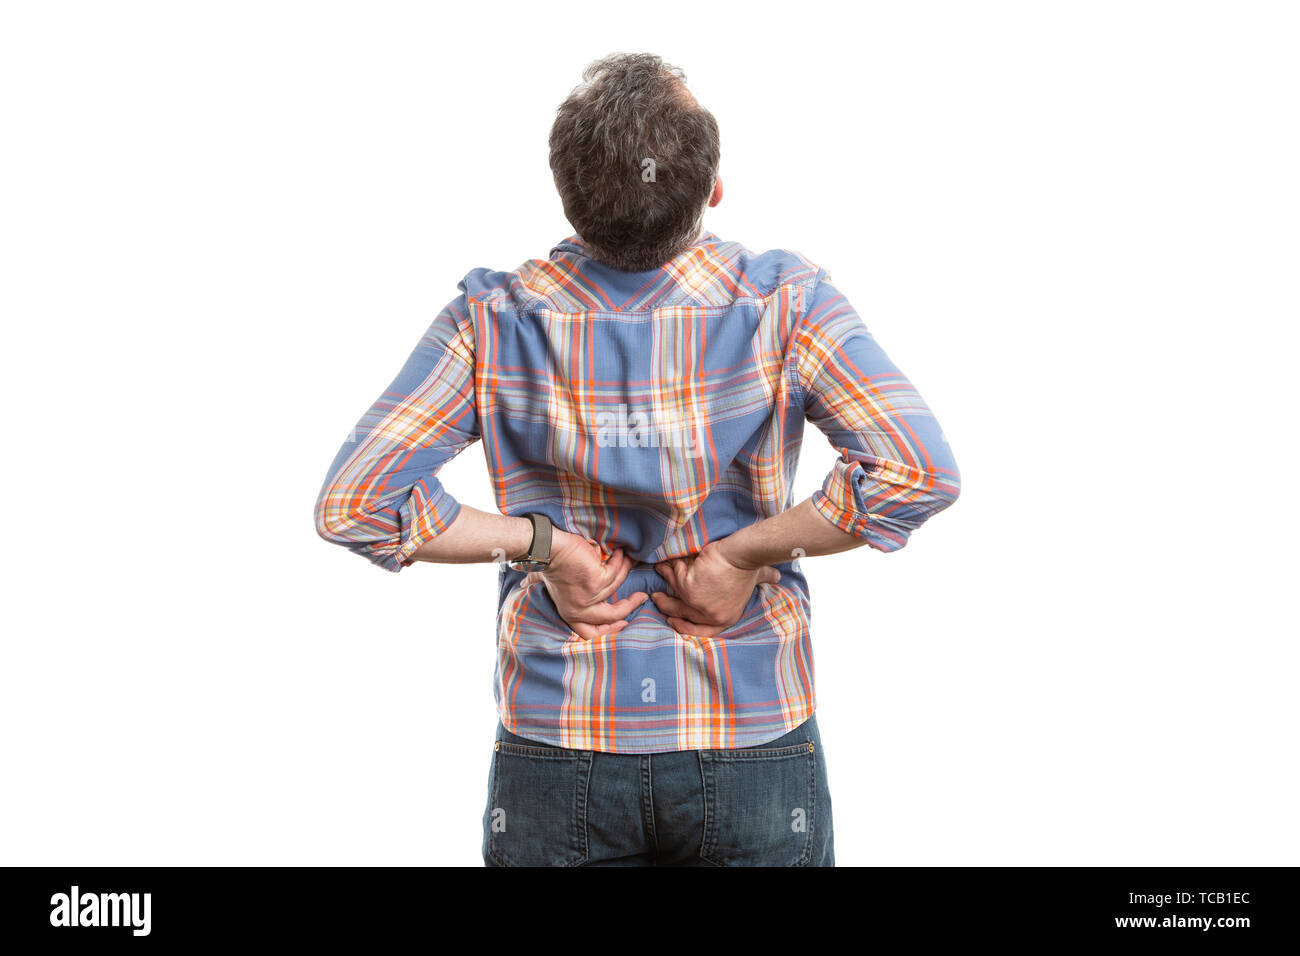 Man dehnen wie Rückenschmerzen durch körperliche Anstrengung Konzept auf weißem studio Hintergrund verursacht Stockfoto